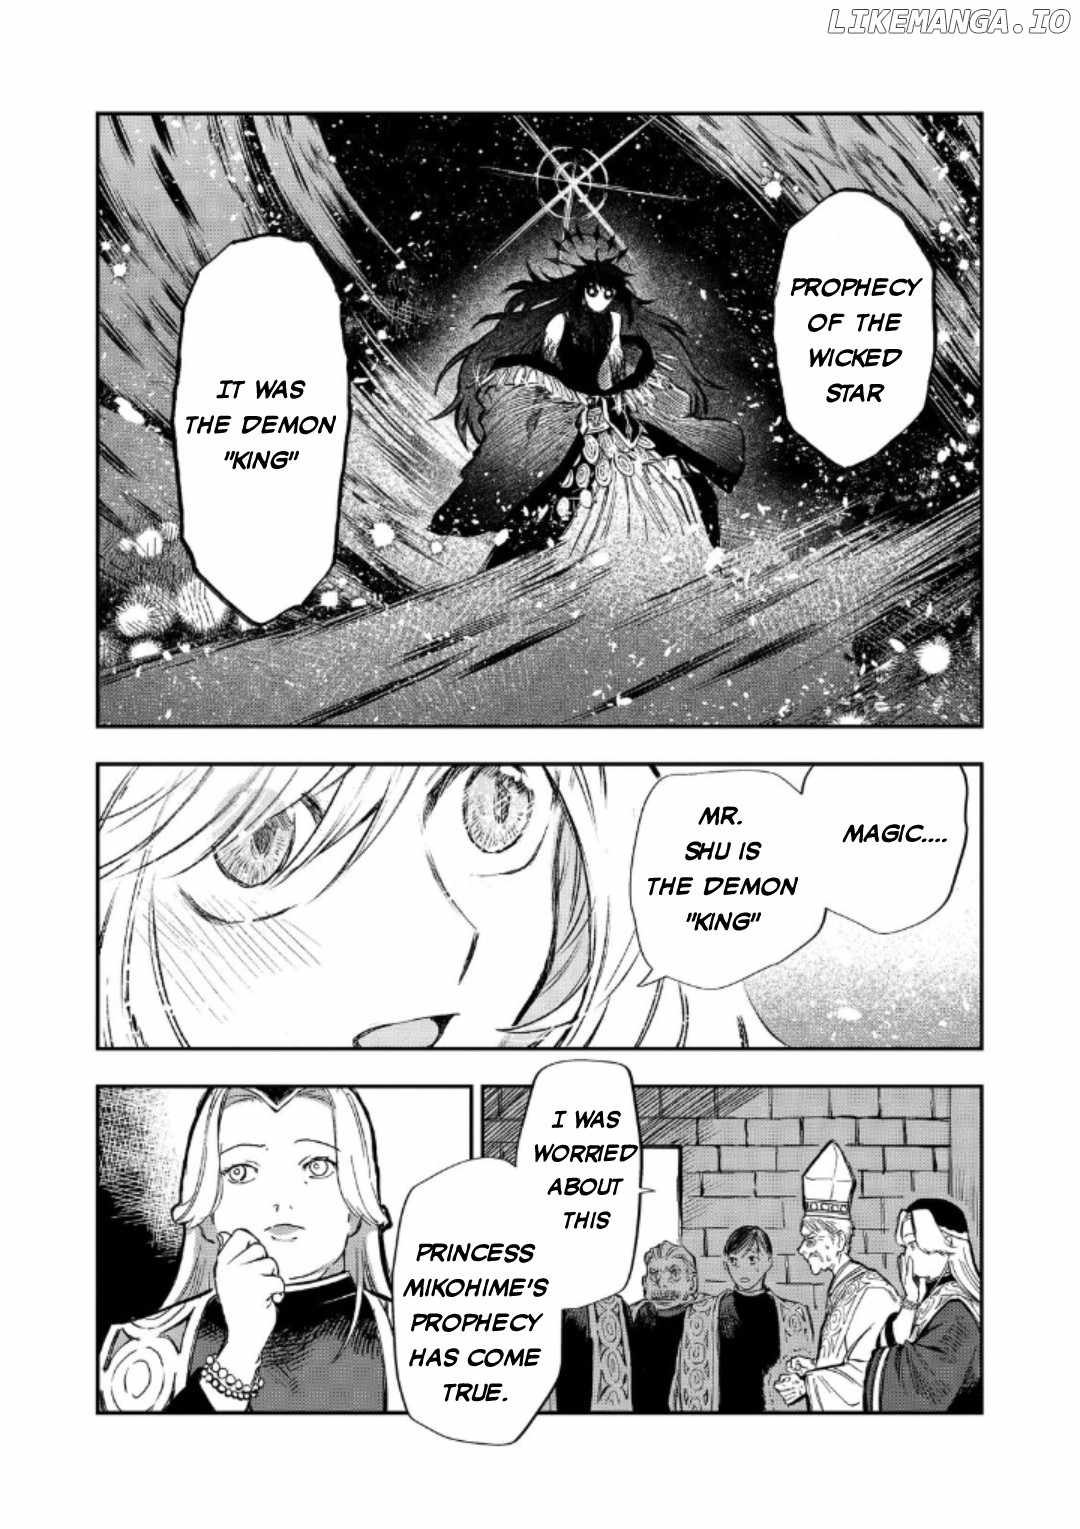 Meiou-sama ga Tooru no desu yo! Chapter 13-eng-li - Page 12